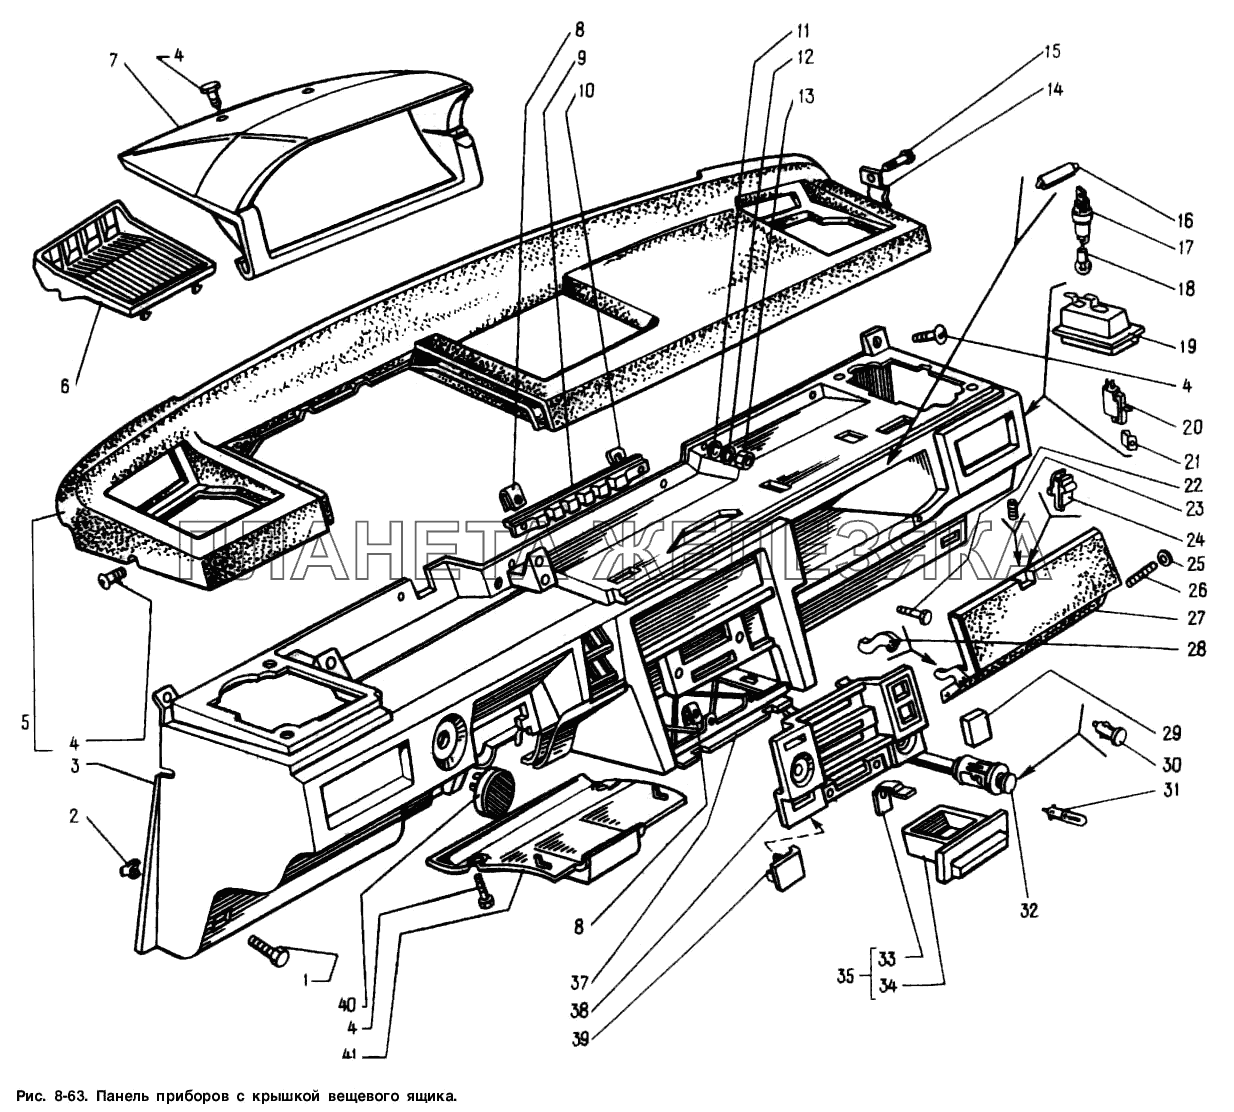 Панель приборов с крышкой вещевого ящика Москвич-2141